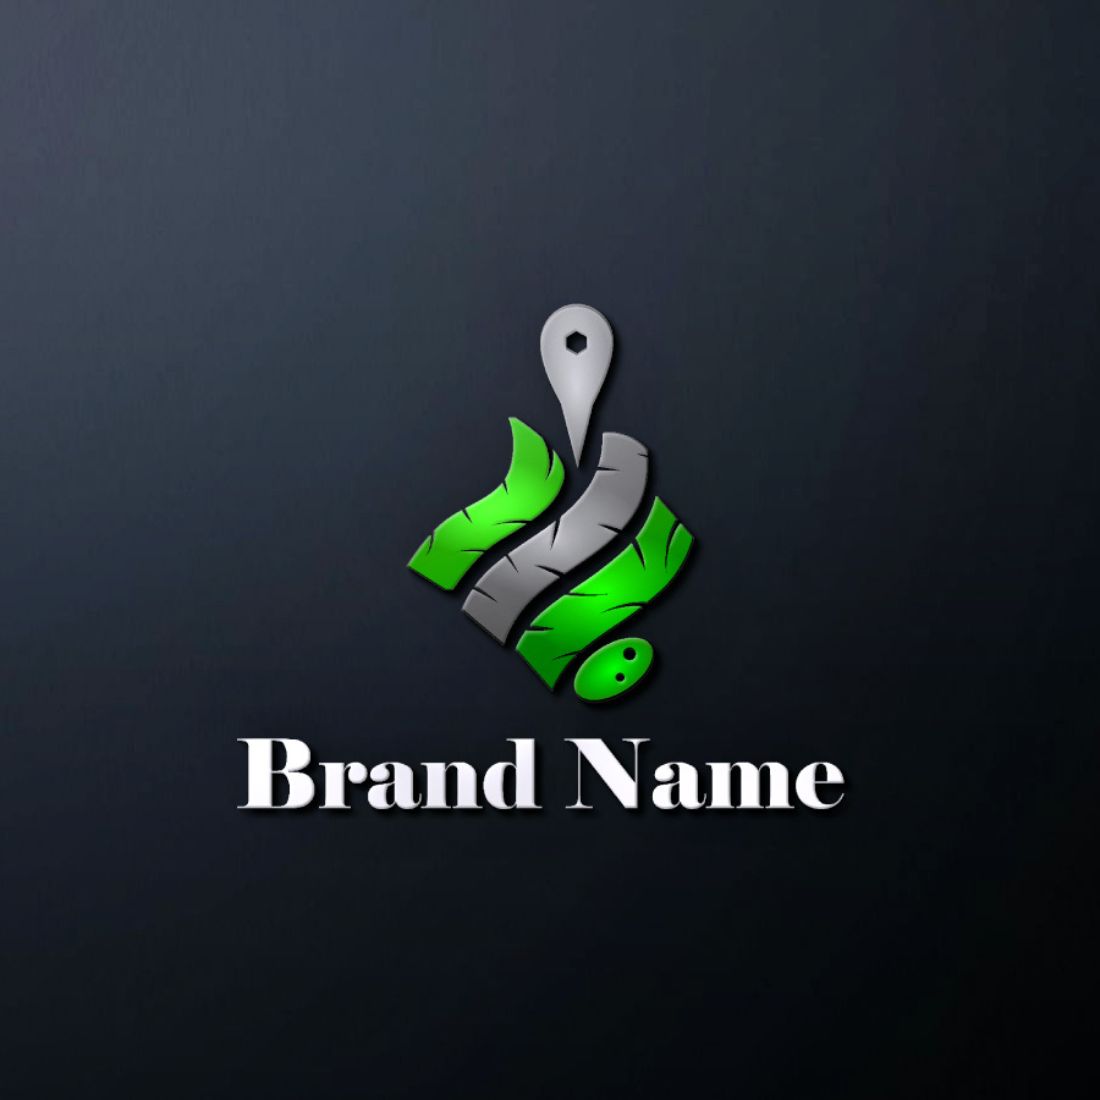 car repair companies logo, mechanical company logo, tyre company logo cover image.